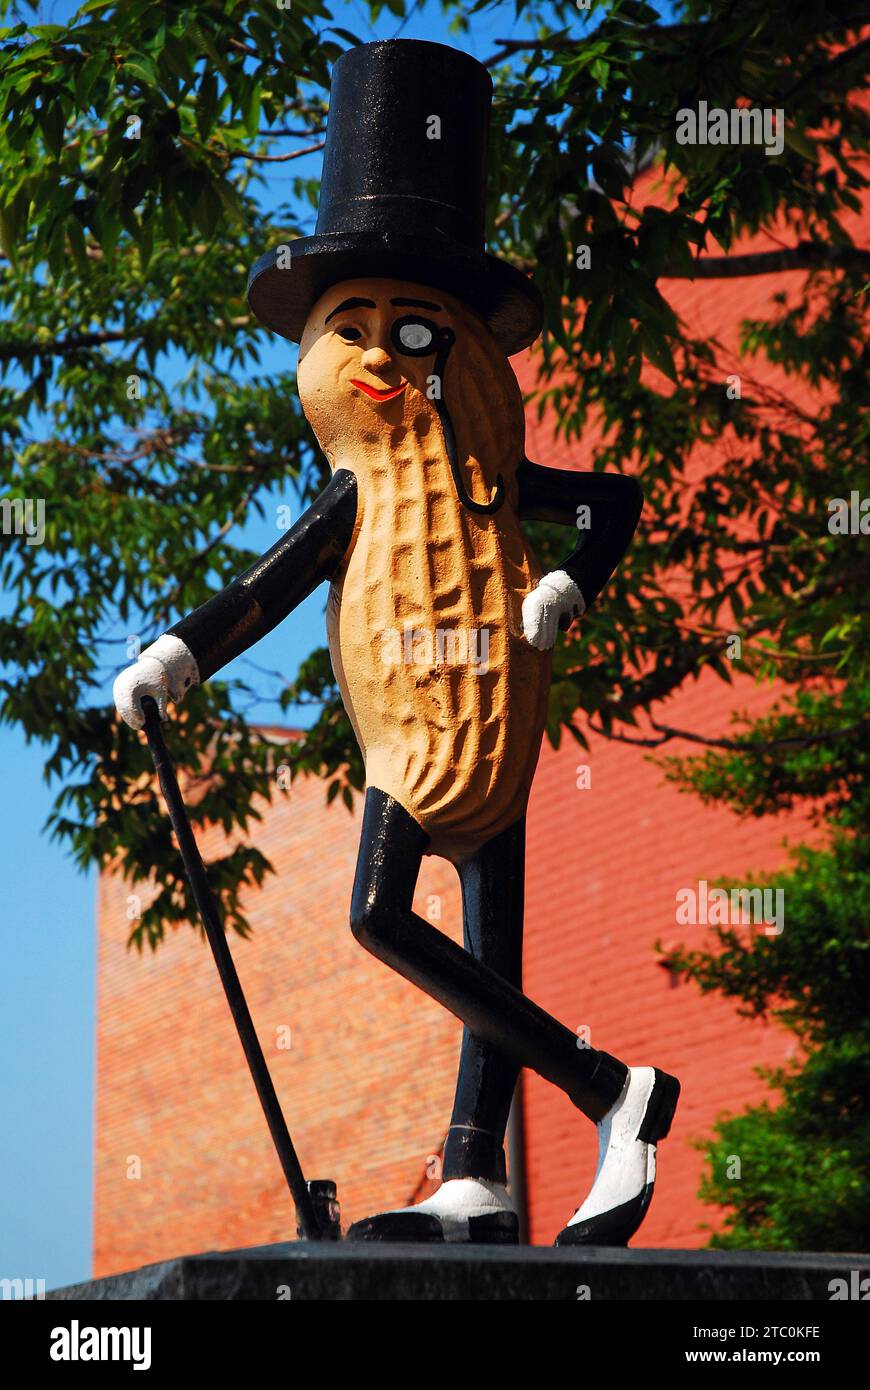 Une sculpture de M. Peanut se trouve à Suffolk, en Virginie, a déclaré que tp serait le berceau du personnage commercial et publicitaire emblématique de Planters Peanuts Banque D'Images